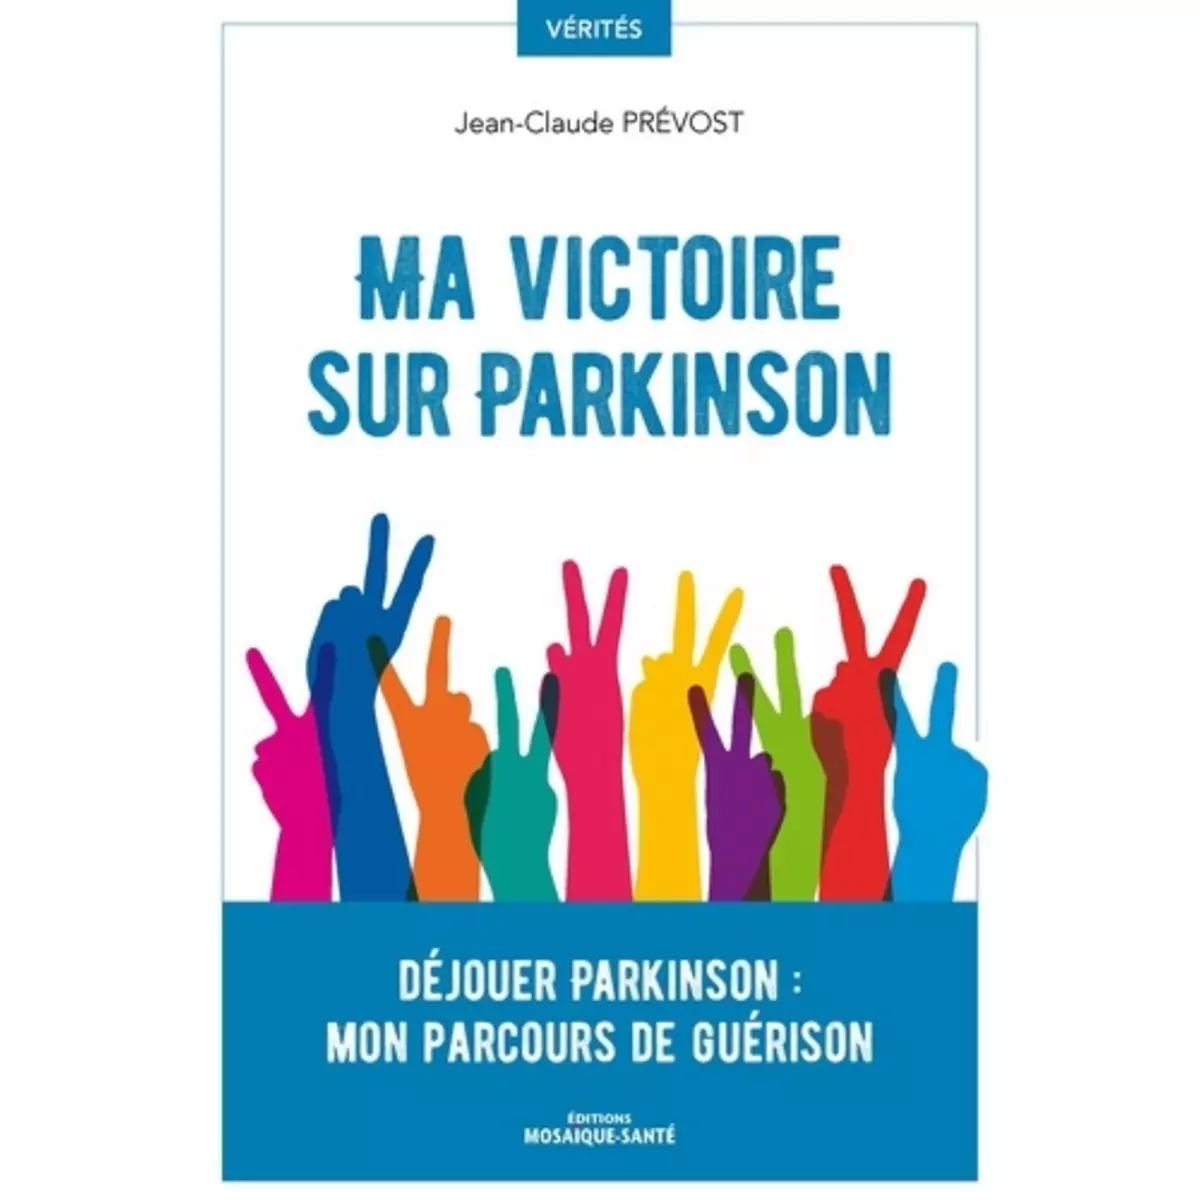  MA VICTOIRE SUR PARKINSON. DEJOUER PARKINSON : MON PARCOURS DE GUERISON, Prevost Jean-claude